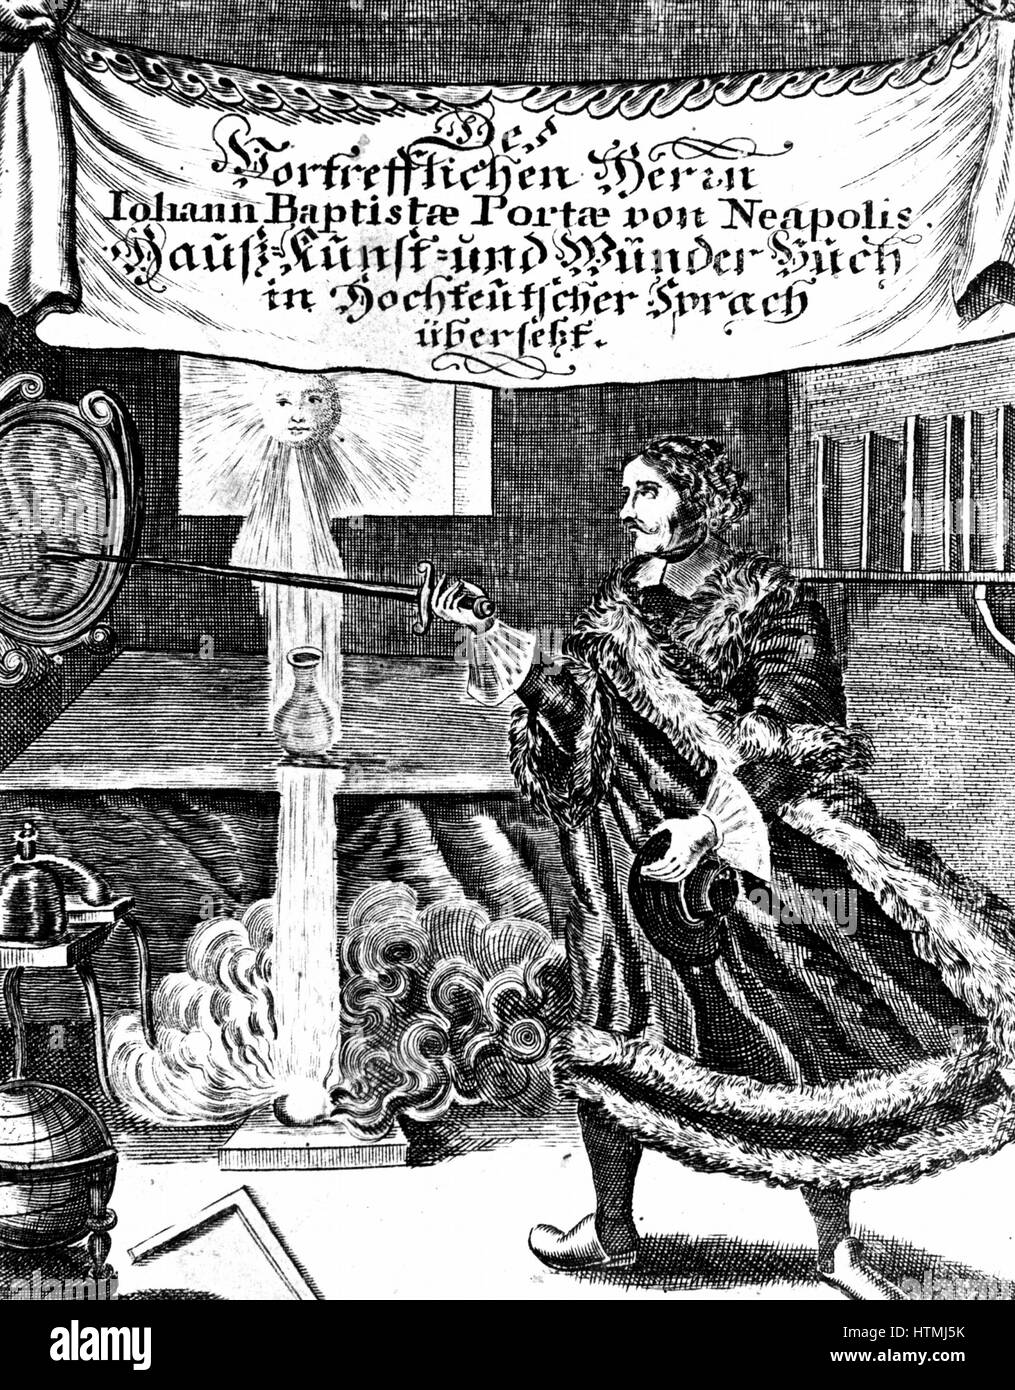 Frontespizio del tardo edizione del Johannnes Baptista della Porta (1543 - 1615) 'Magia Naturalis" (Norimberga, 1715). Immagine contiene un certo numero di essenziali funzioni alchemici come il filosofo di uovo, il vaso ermetico e il sole (oro). Incisione. Foto Stock